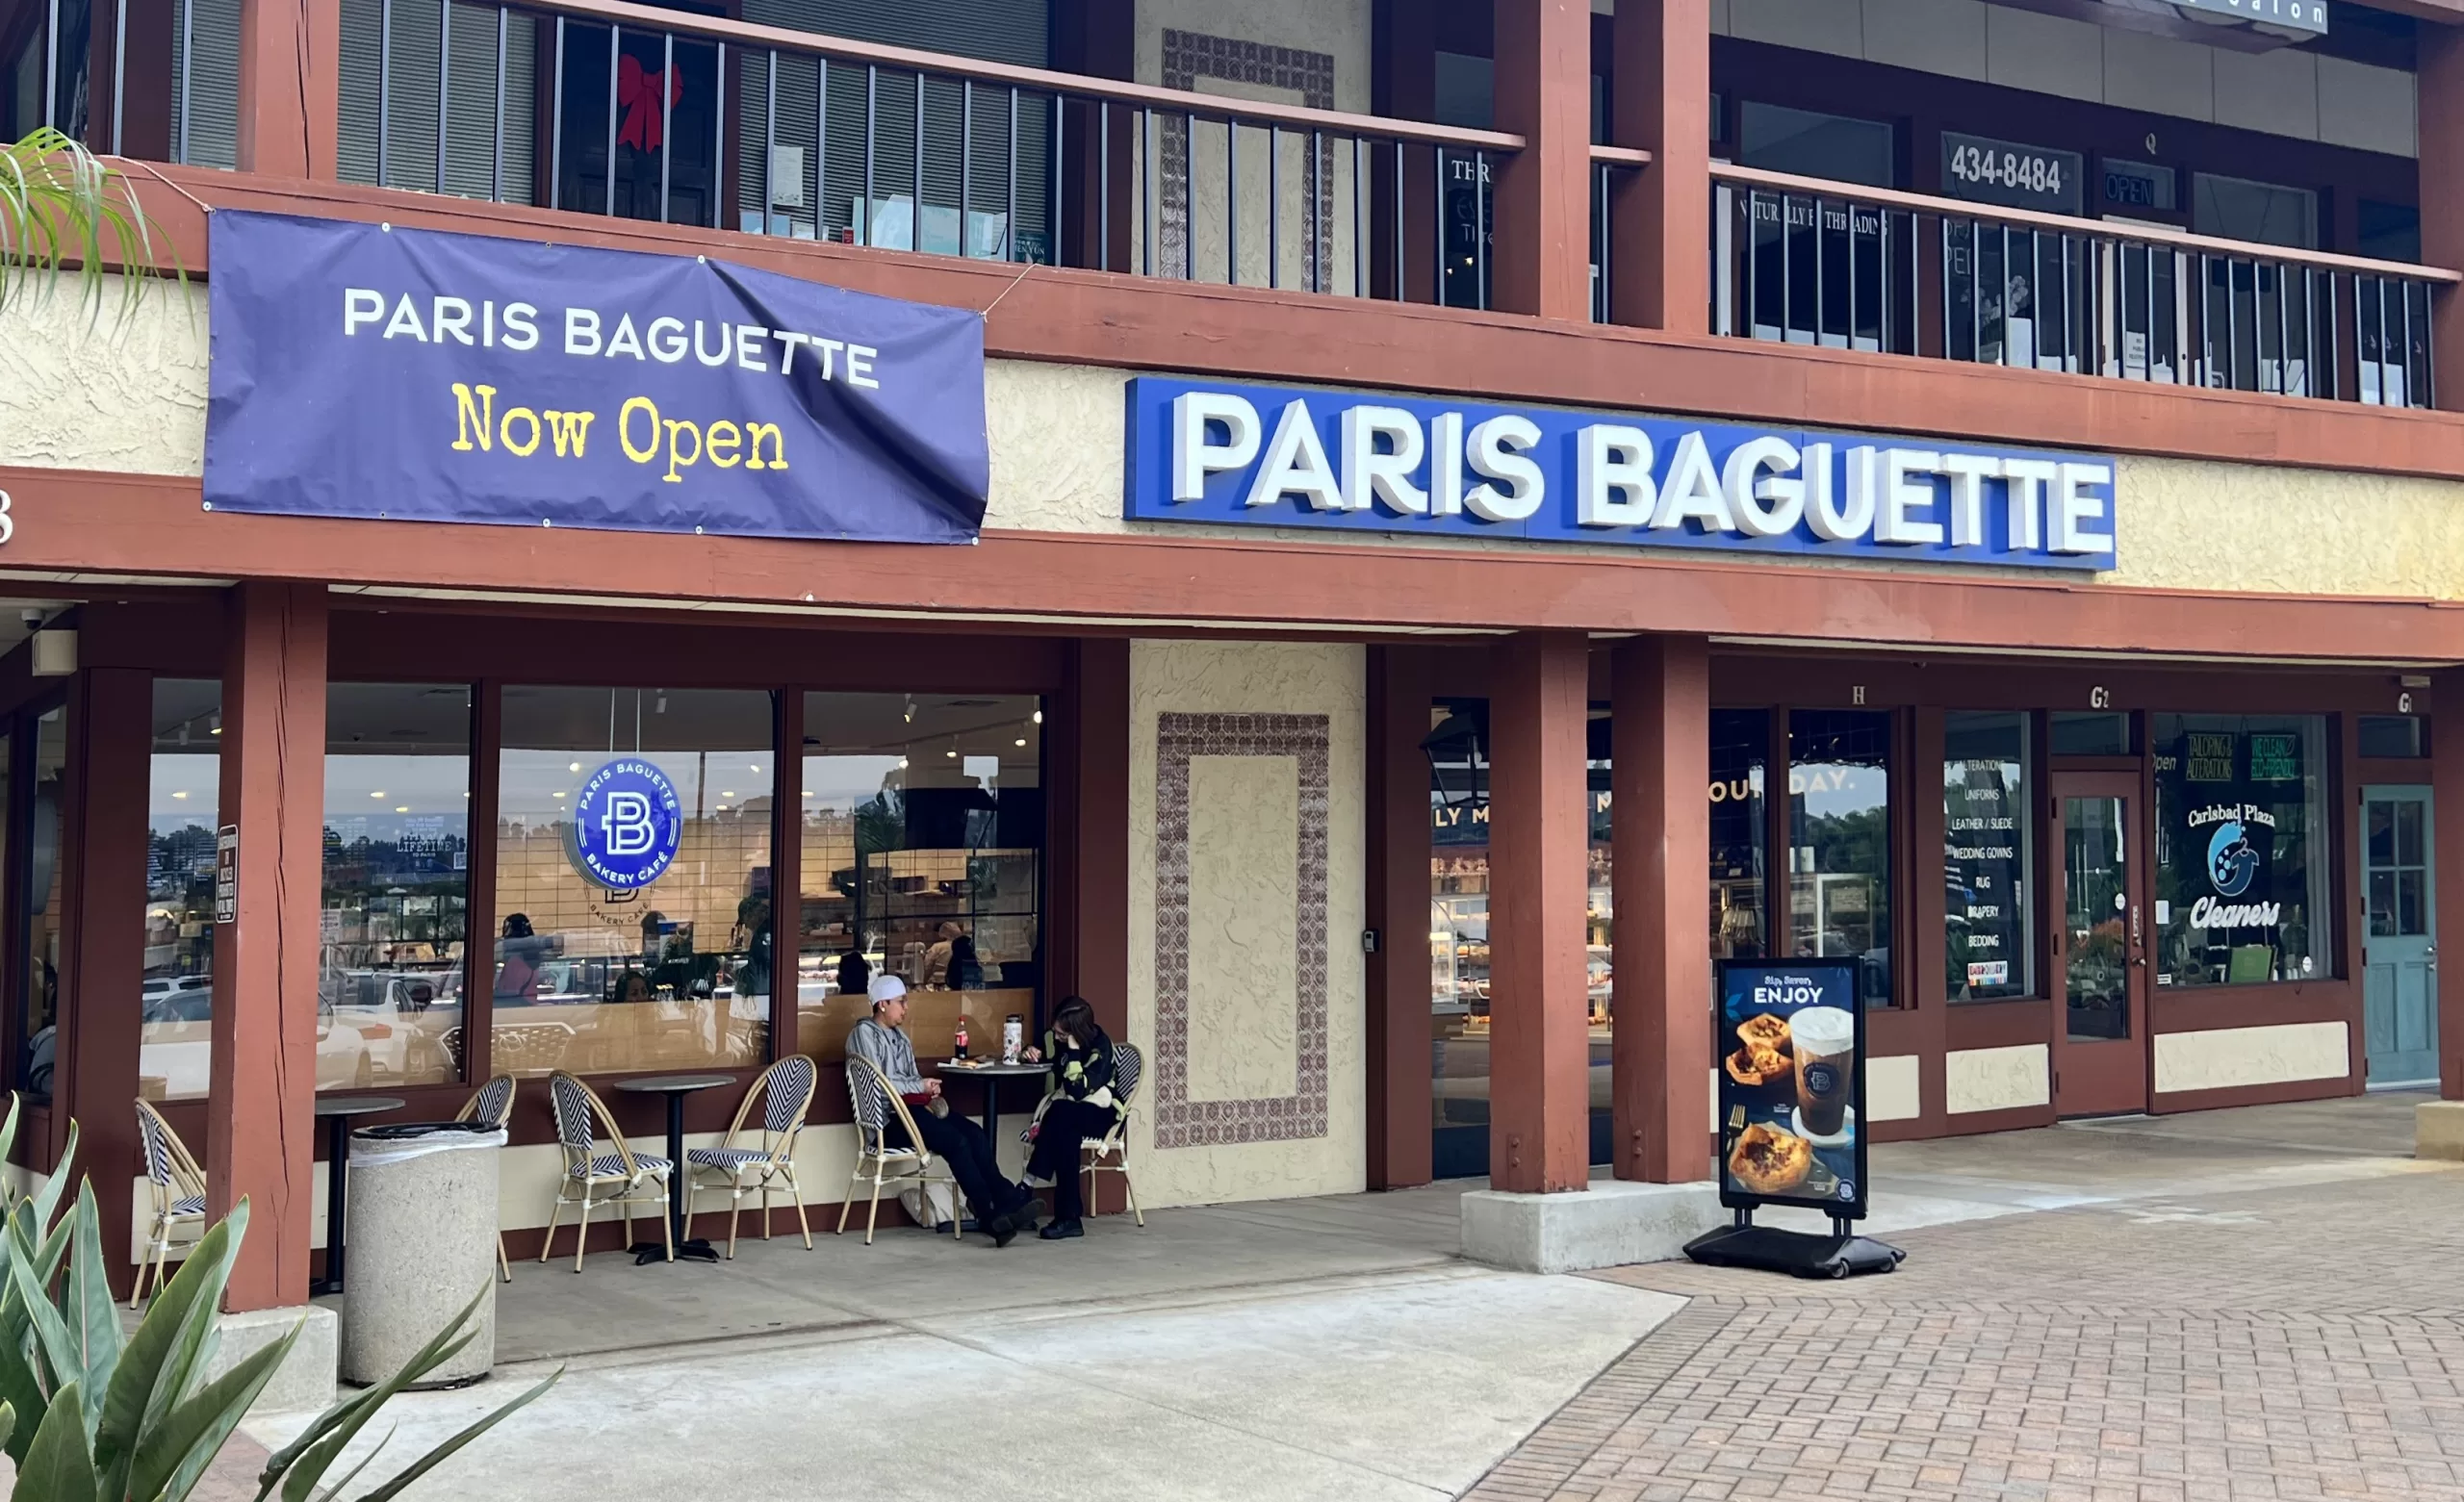 Paris Baguette in Carlsbad California